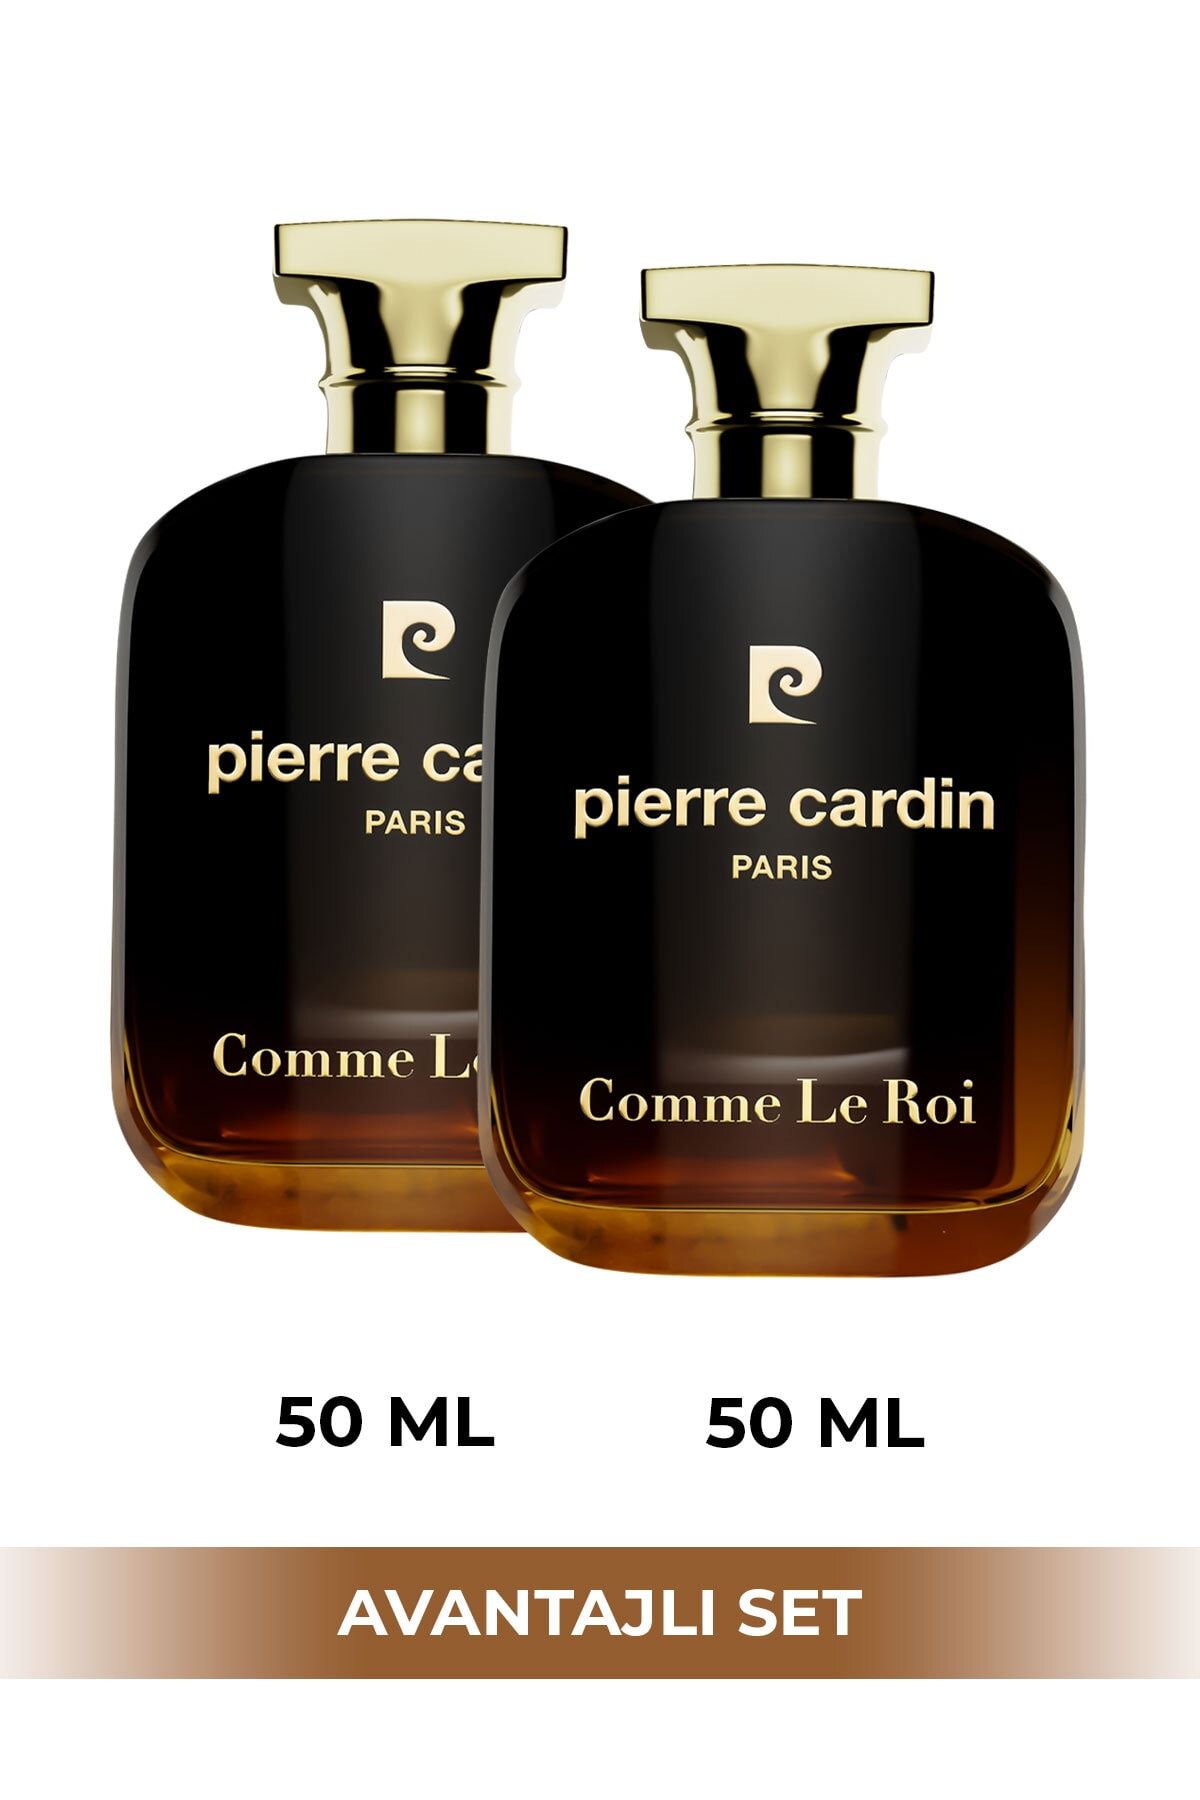 Pierre Cardin Comme Le Roi Edp 50 ml Ikili Erkek Parfüm Seti Stcc021201